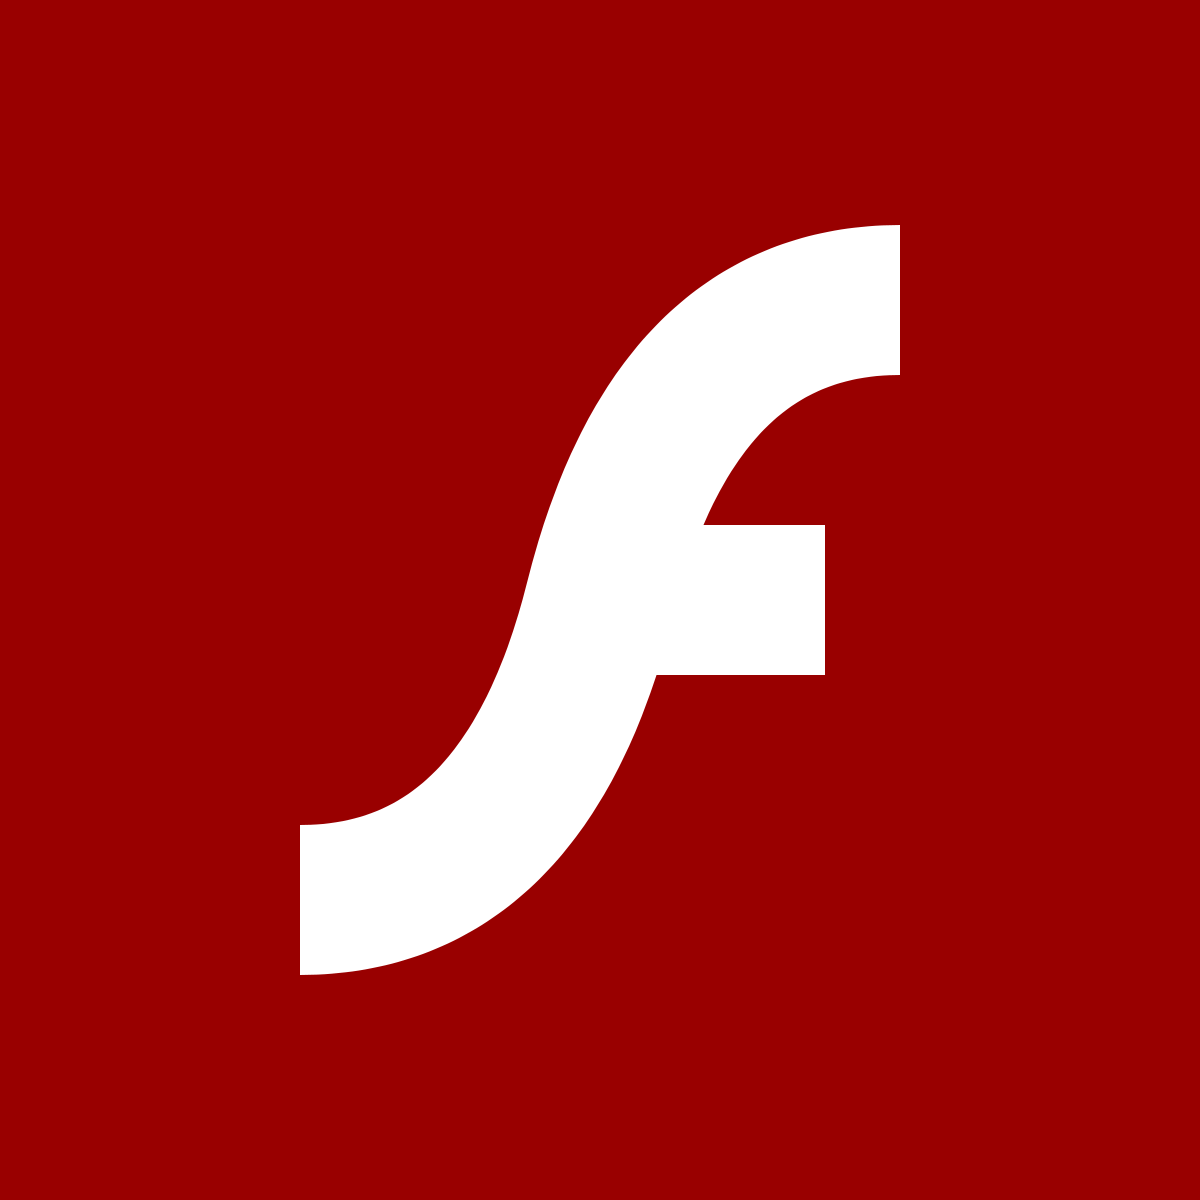 adobe flash for mac os x 10.5.8